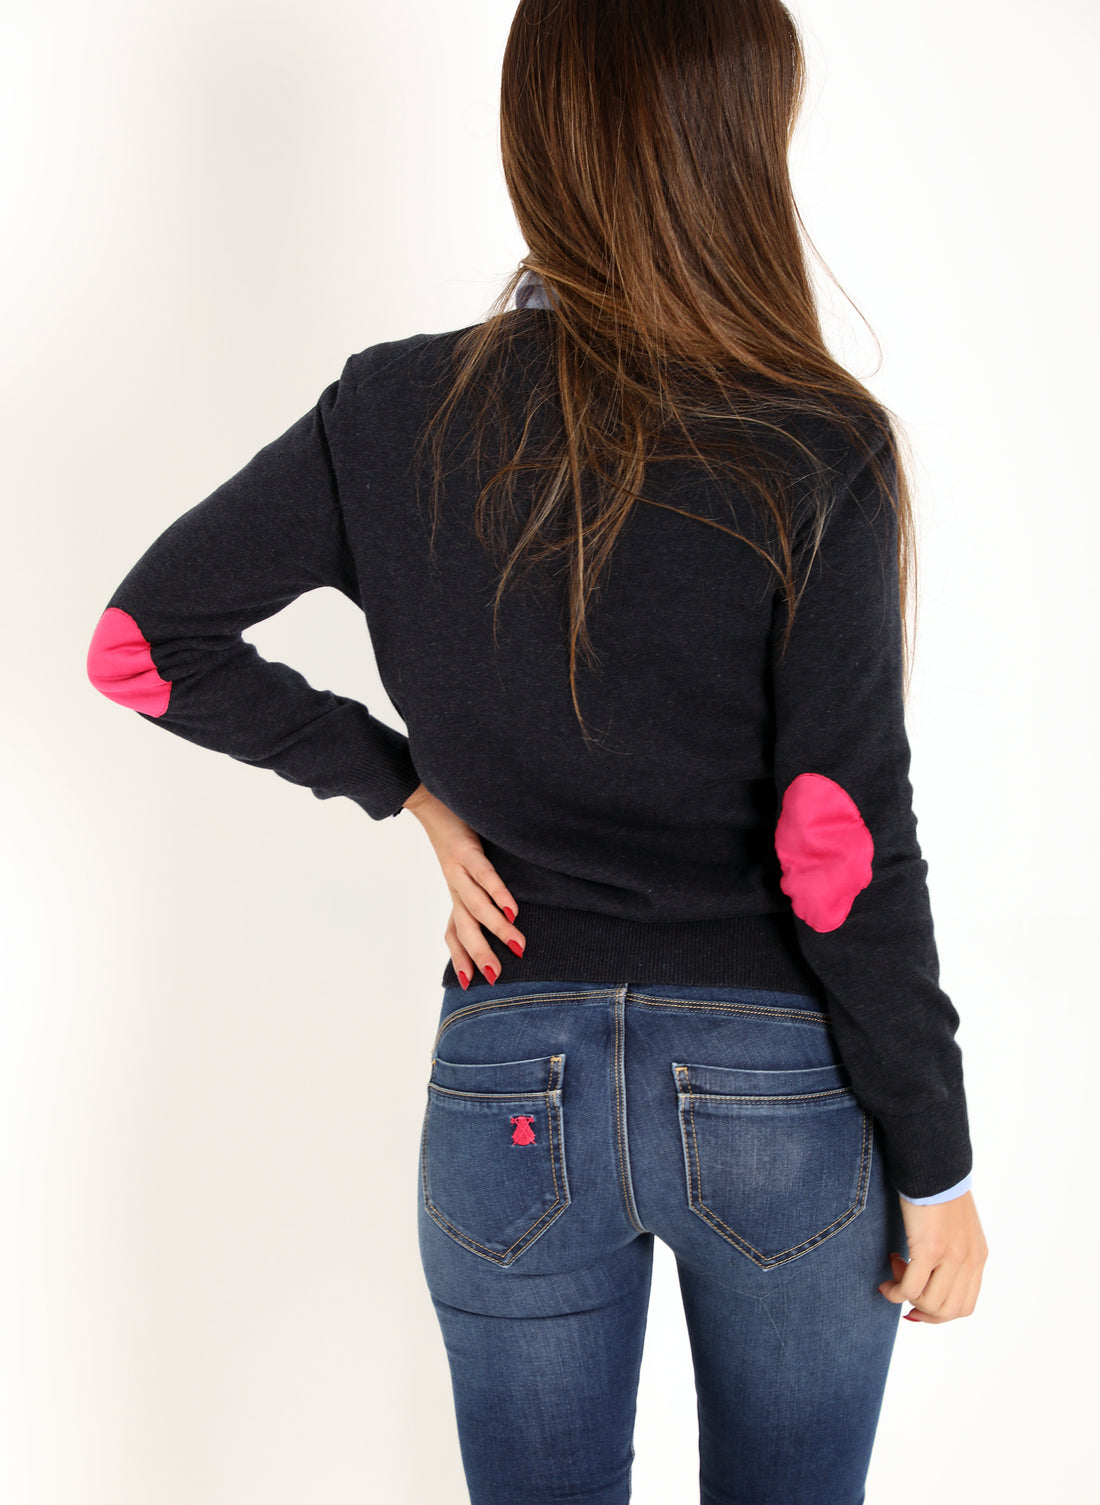 Marineblauer Damen-Pullover mit V-Ausschnitt und Ellbogen-Patches